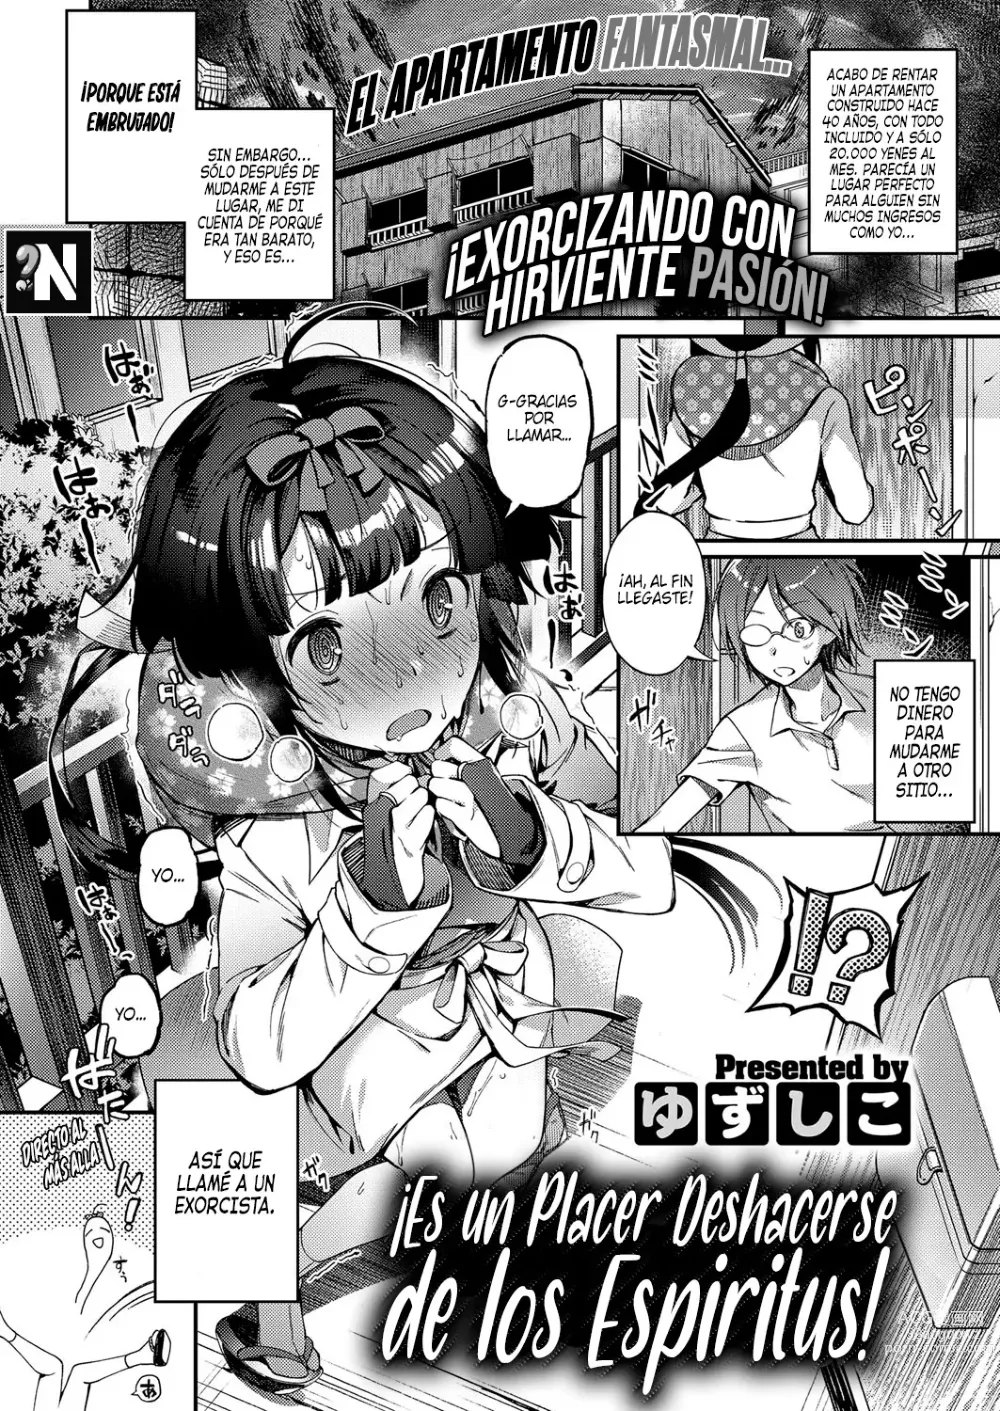 Page 1 of manga ¡Es un Placer Deshacerse de los Espiritus!